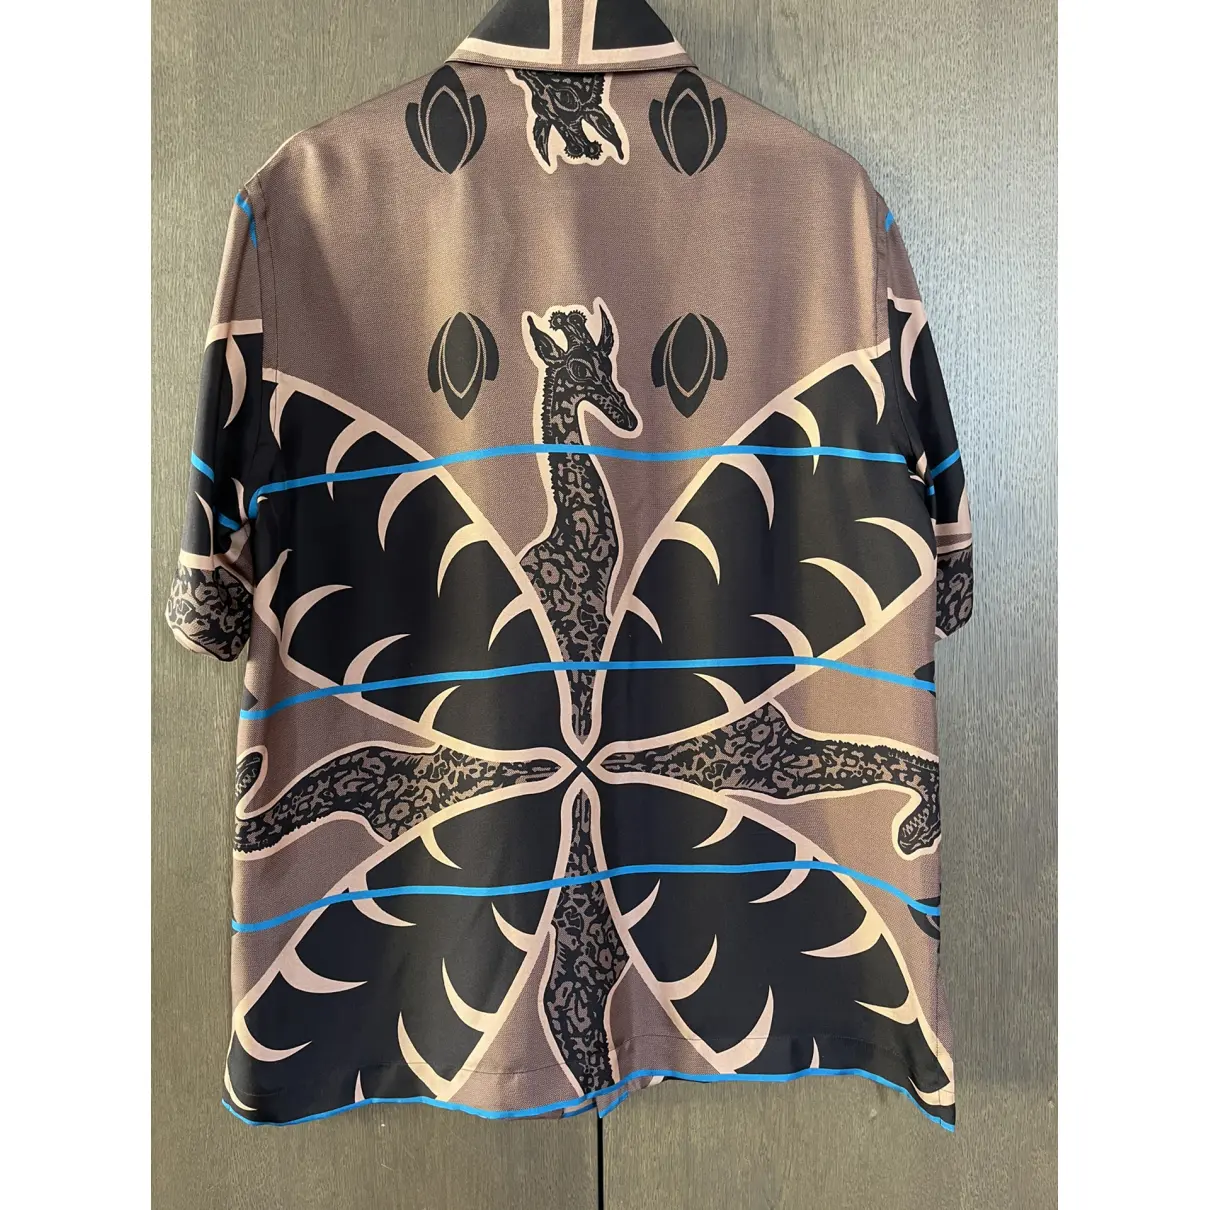 Buy Louis Vuitton Silk shirt online